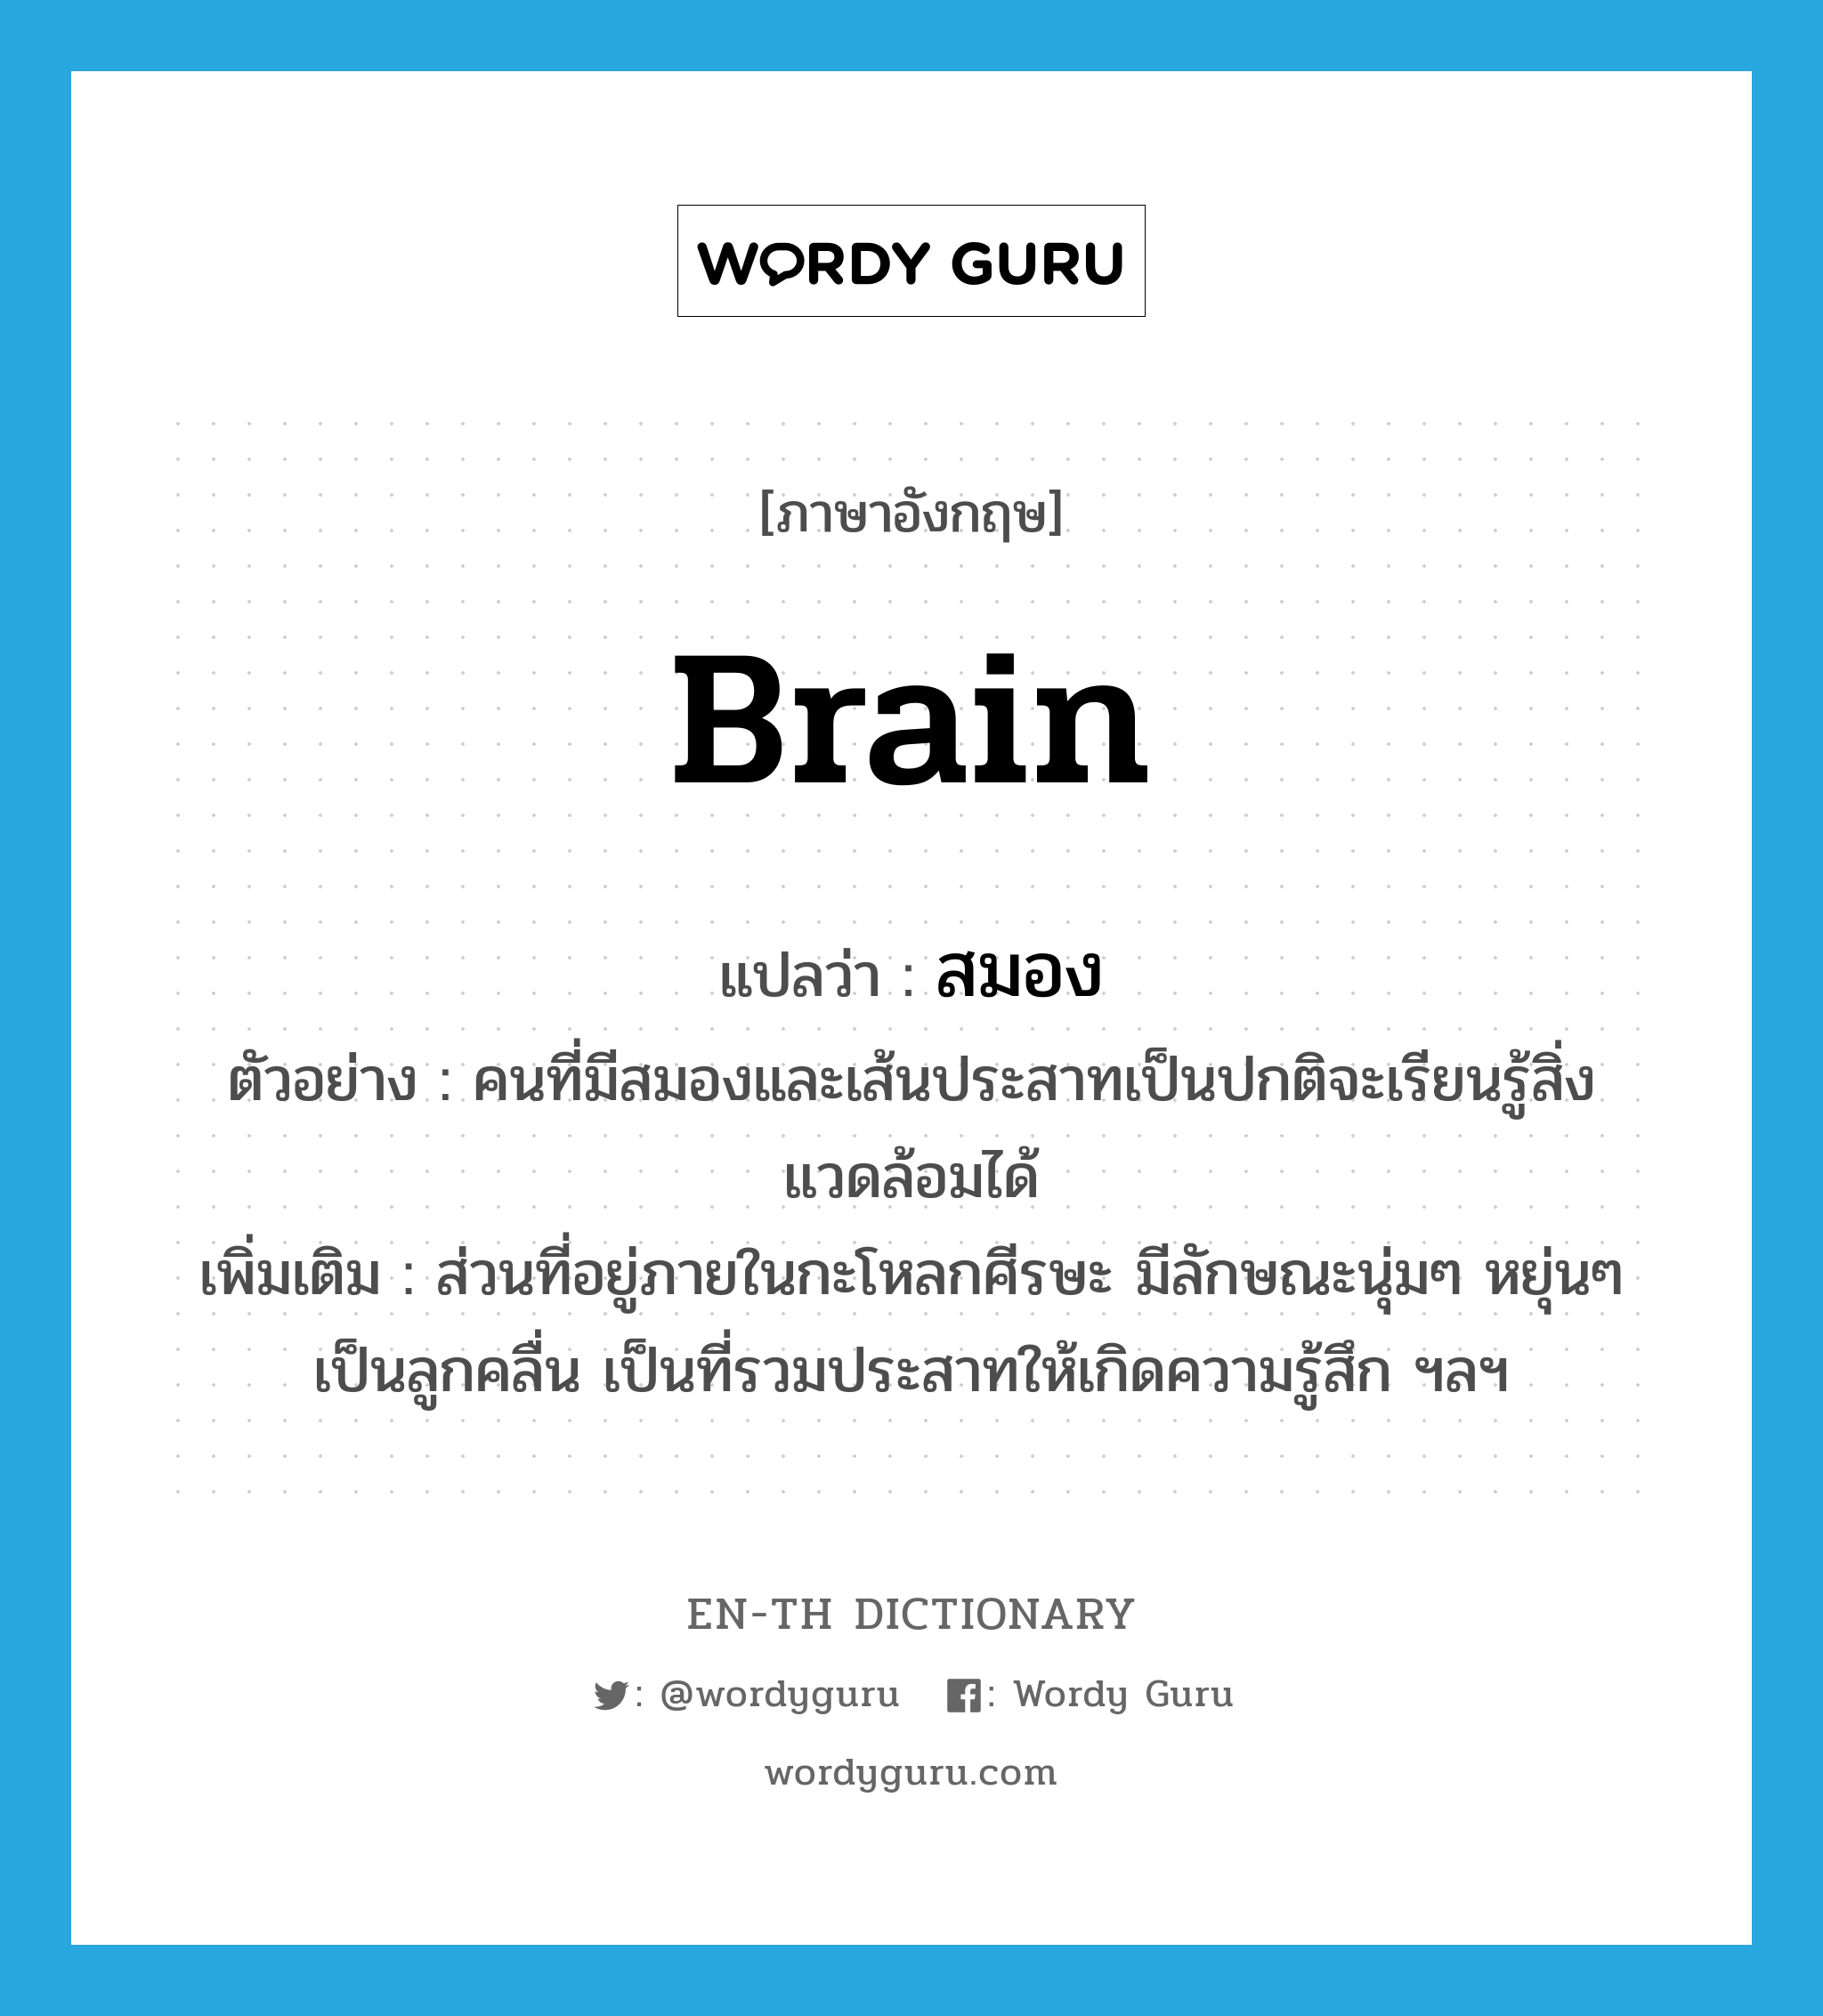 สมอง ภาษาอังกฤษ?, คำศัพท์ภาษาอังกฤษ สมอง แปลว่า brain ประเภท N ตัวอย่าง คนที่มีสมองและเส้นประสาทเป็นปกติจะเรียนรู้สิ่งแวดล้อมได้ เพิ่มเติม ส่วนที่อยู่ภายในกะโหลกศีรษะ มีลักษณะนุ่มๆ หยุ่นๆ เป็นลูกคลื่น เป็นที่รวมประสาทให้เกิดความรู้สึก ฯลฯ หมวด N